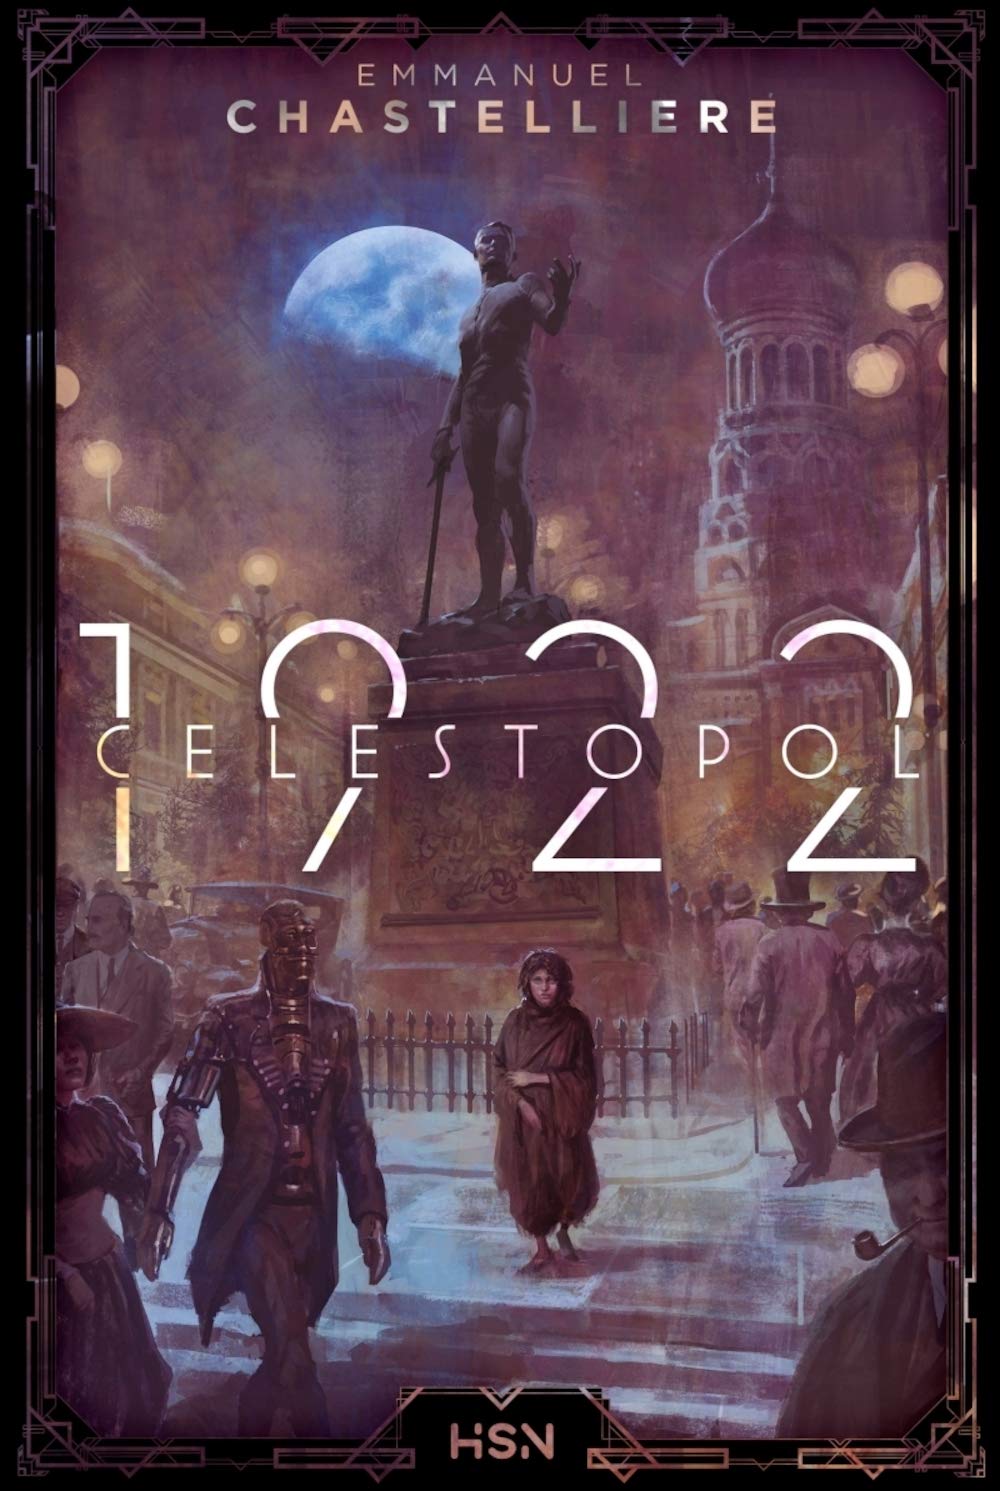 « Célestopol 1922 », d’Emmanuel Chastellière